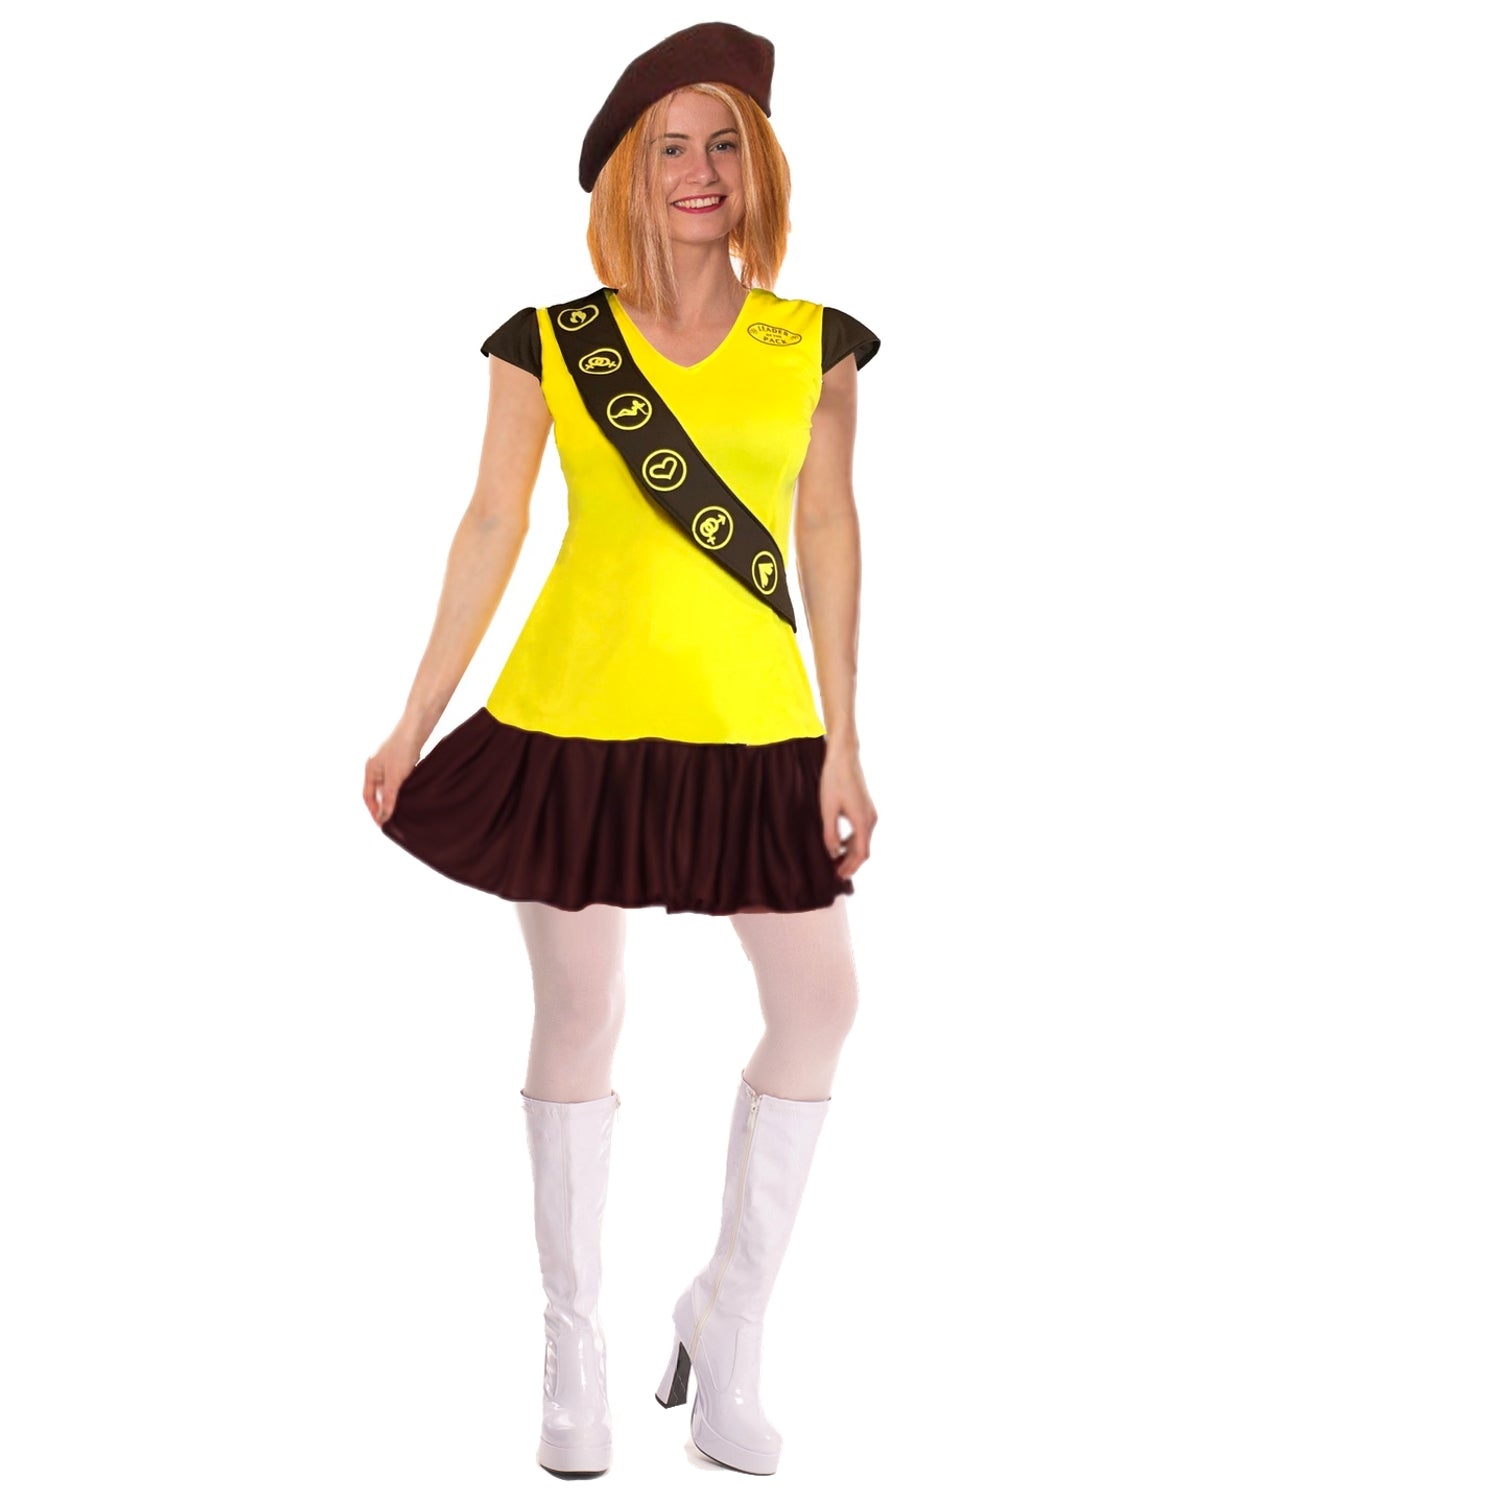 Girl Guide Brownie-costume.jpg